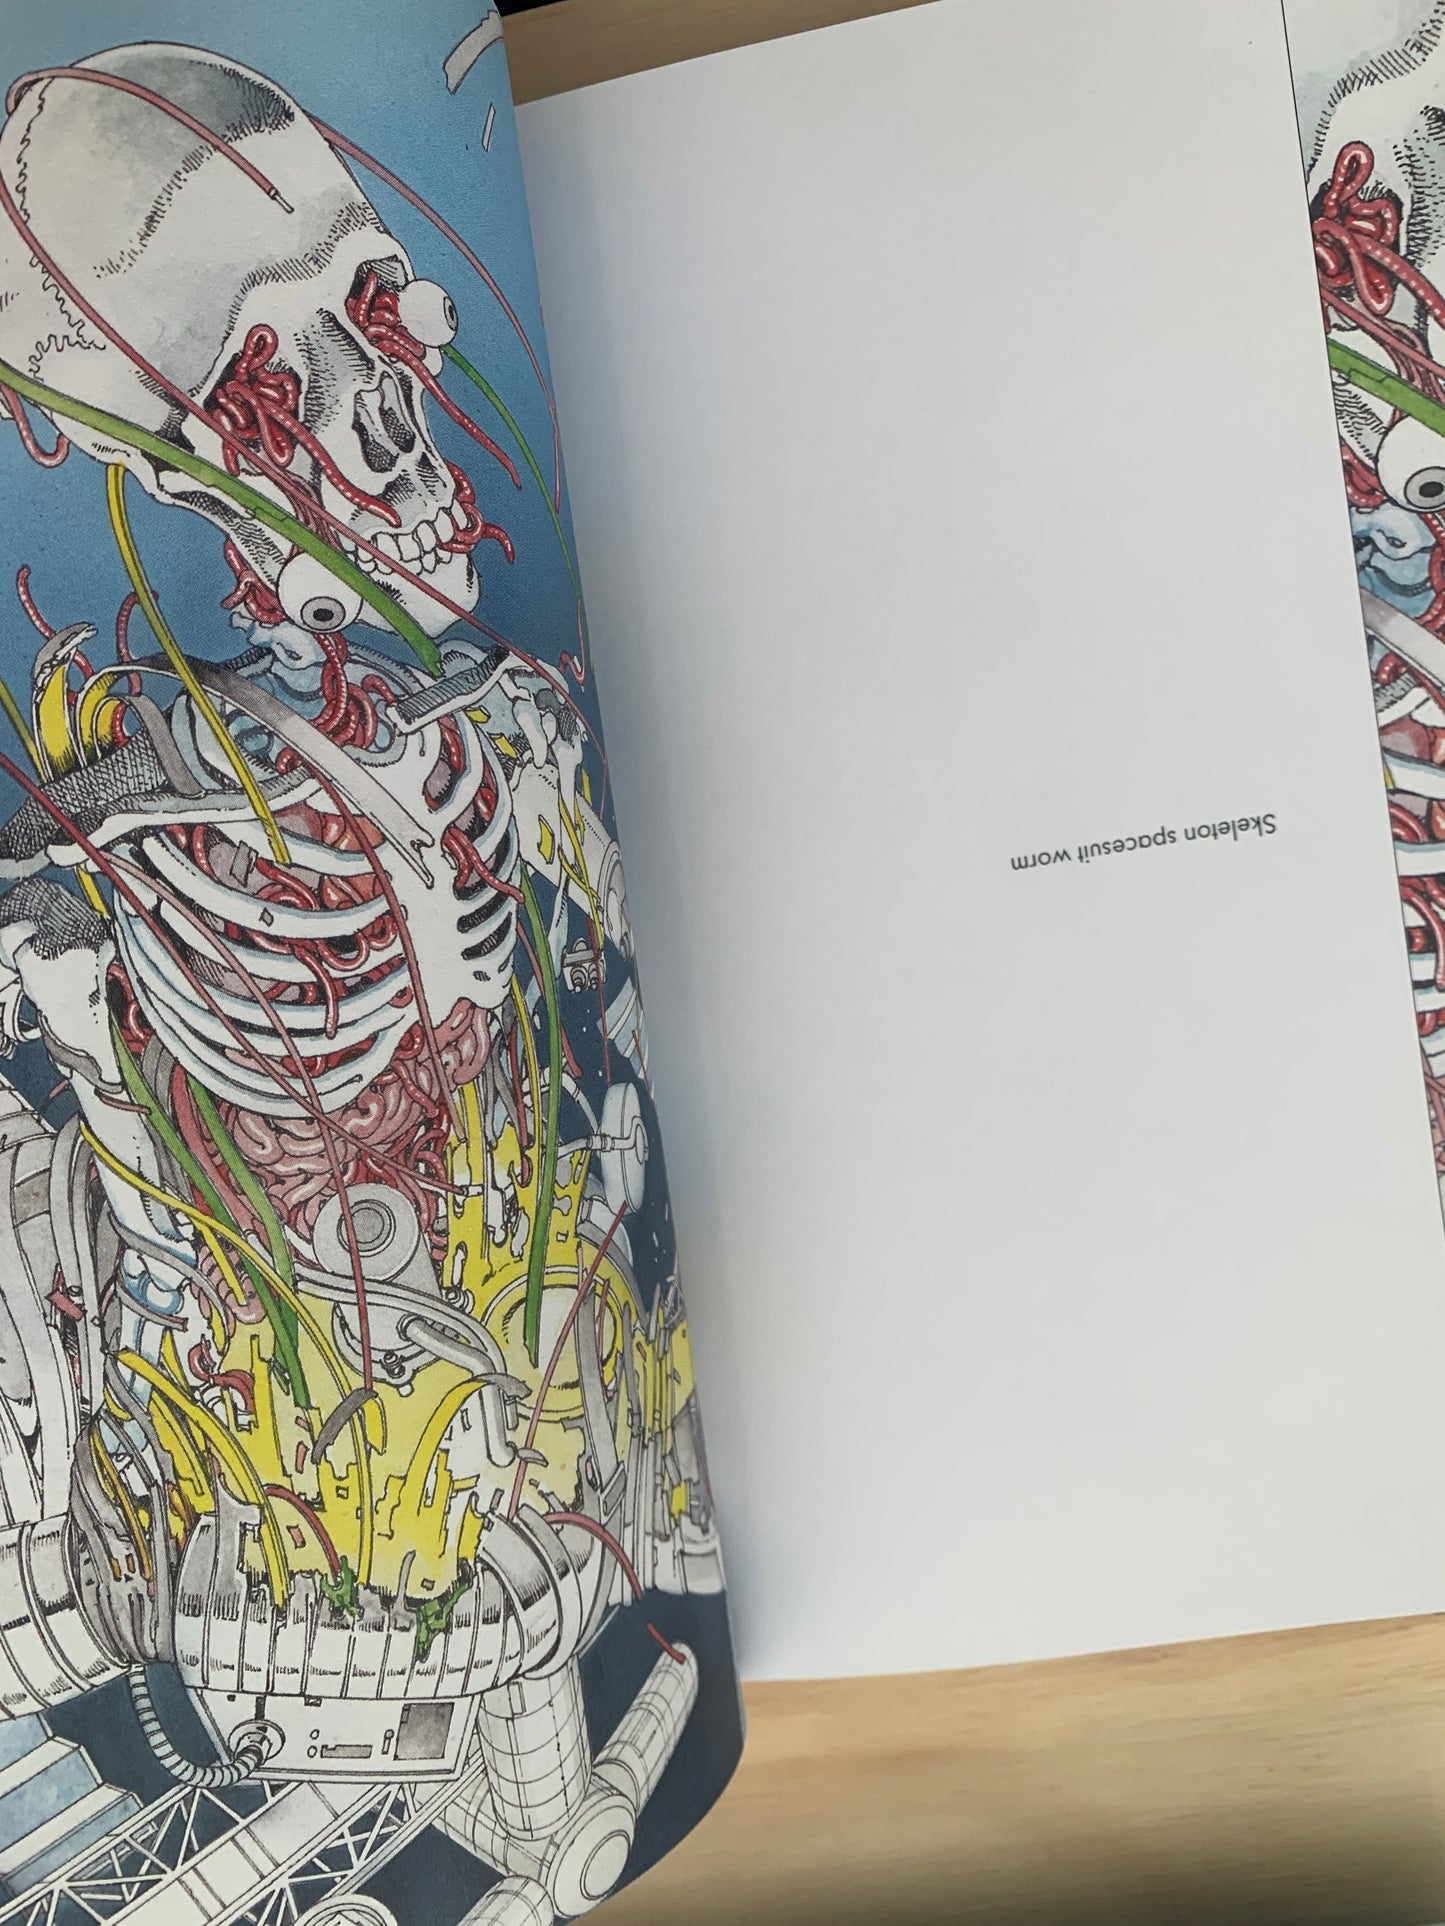 Shintaro Kago : Artbook ( 3rd edition - 6,7 x 9,5 inches)